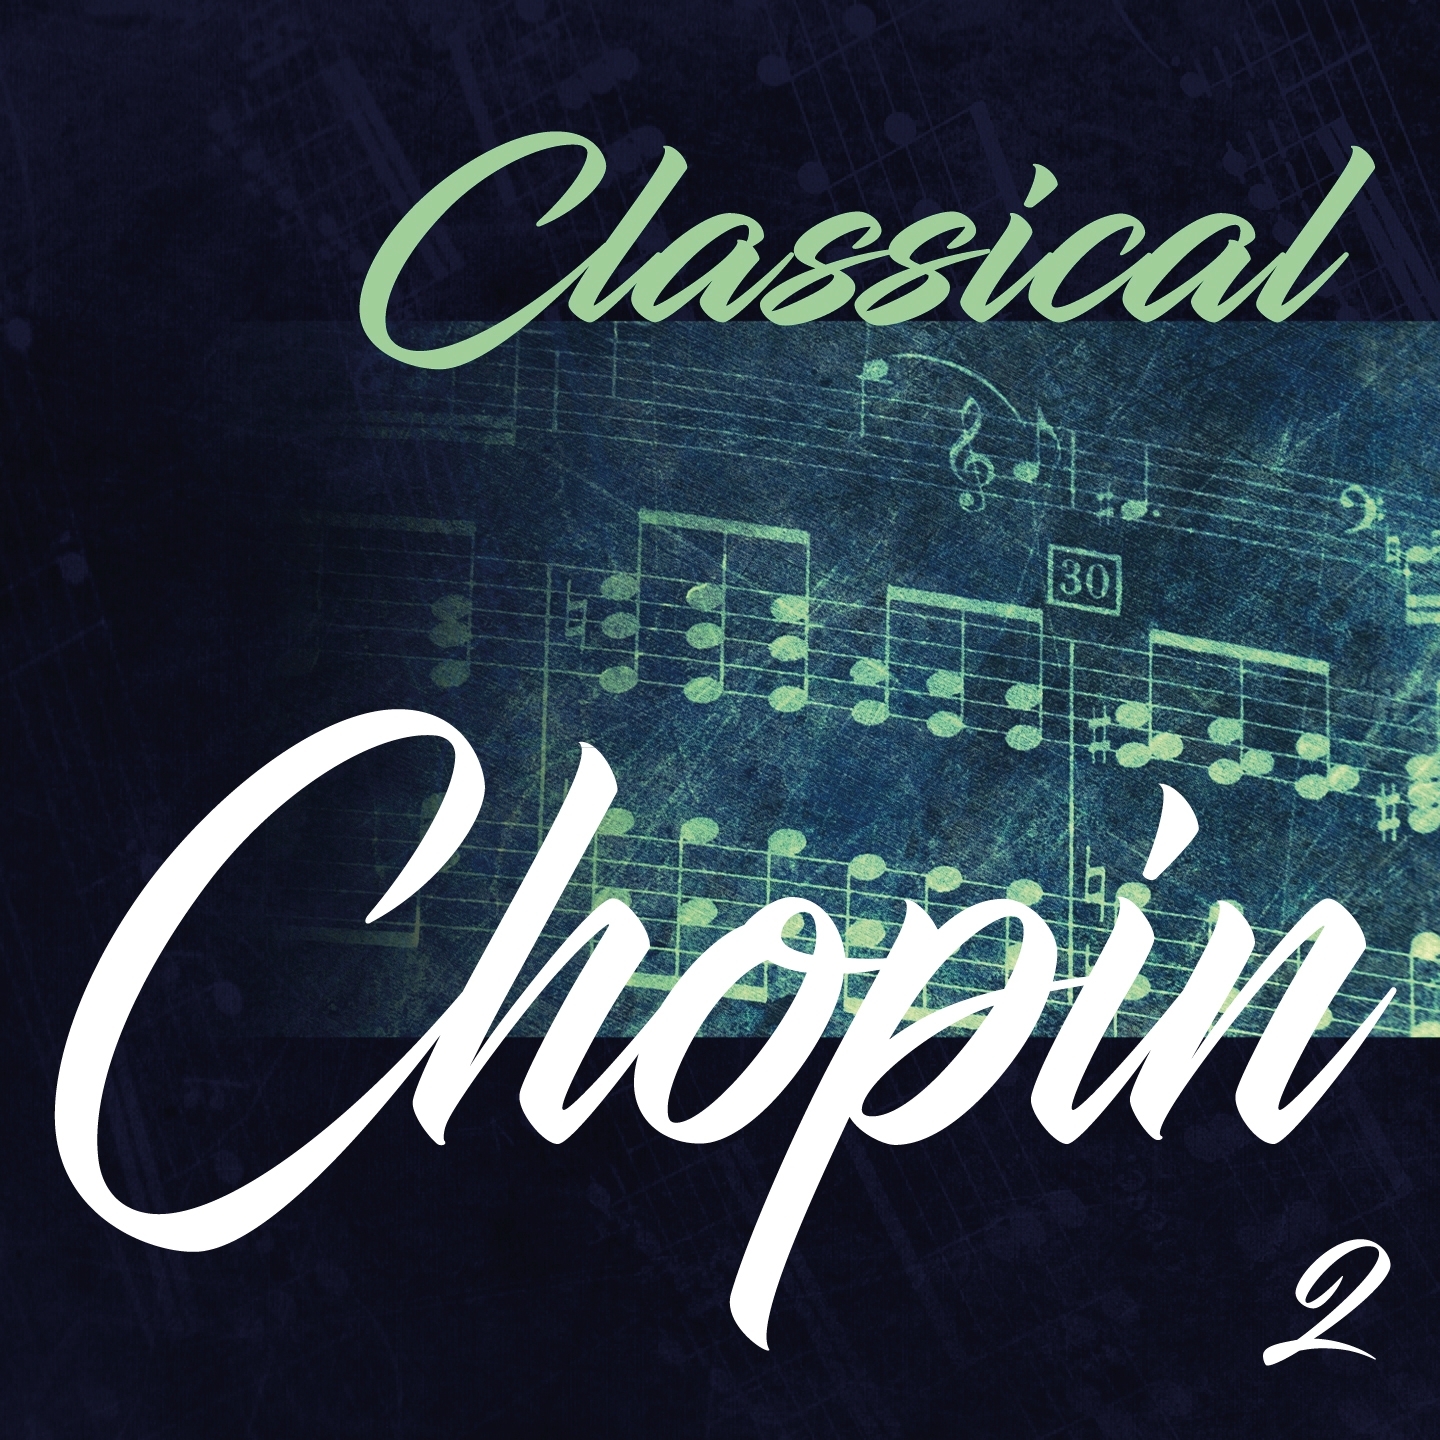 Classical Chopin 2